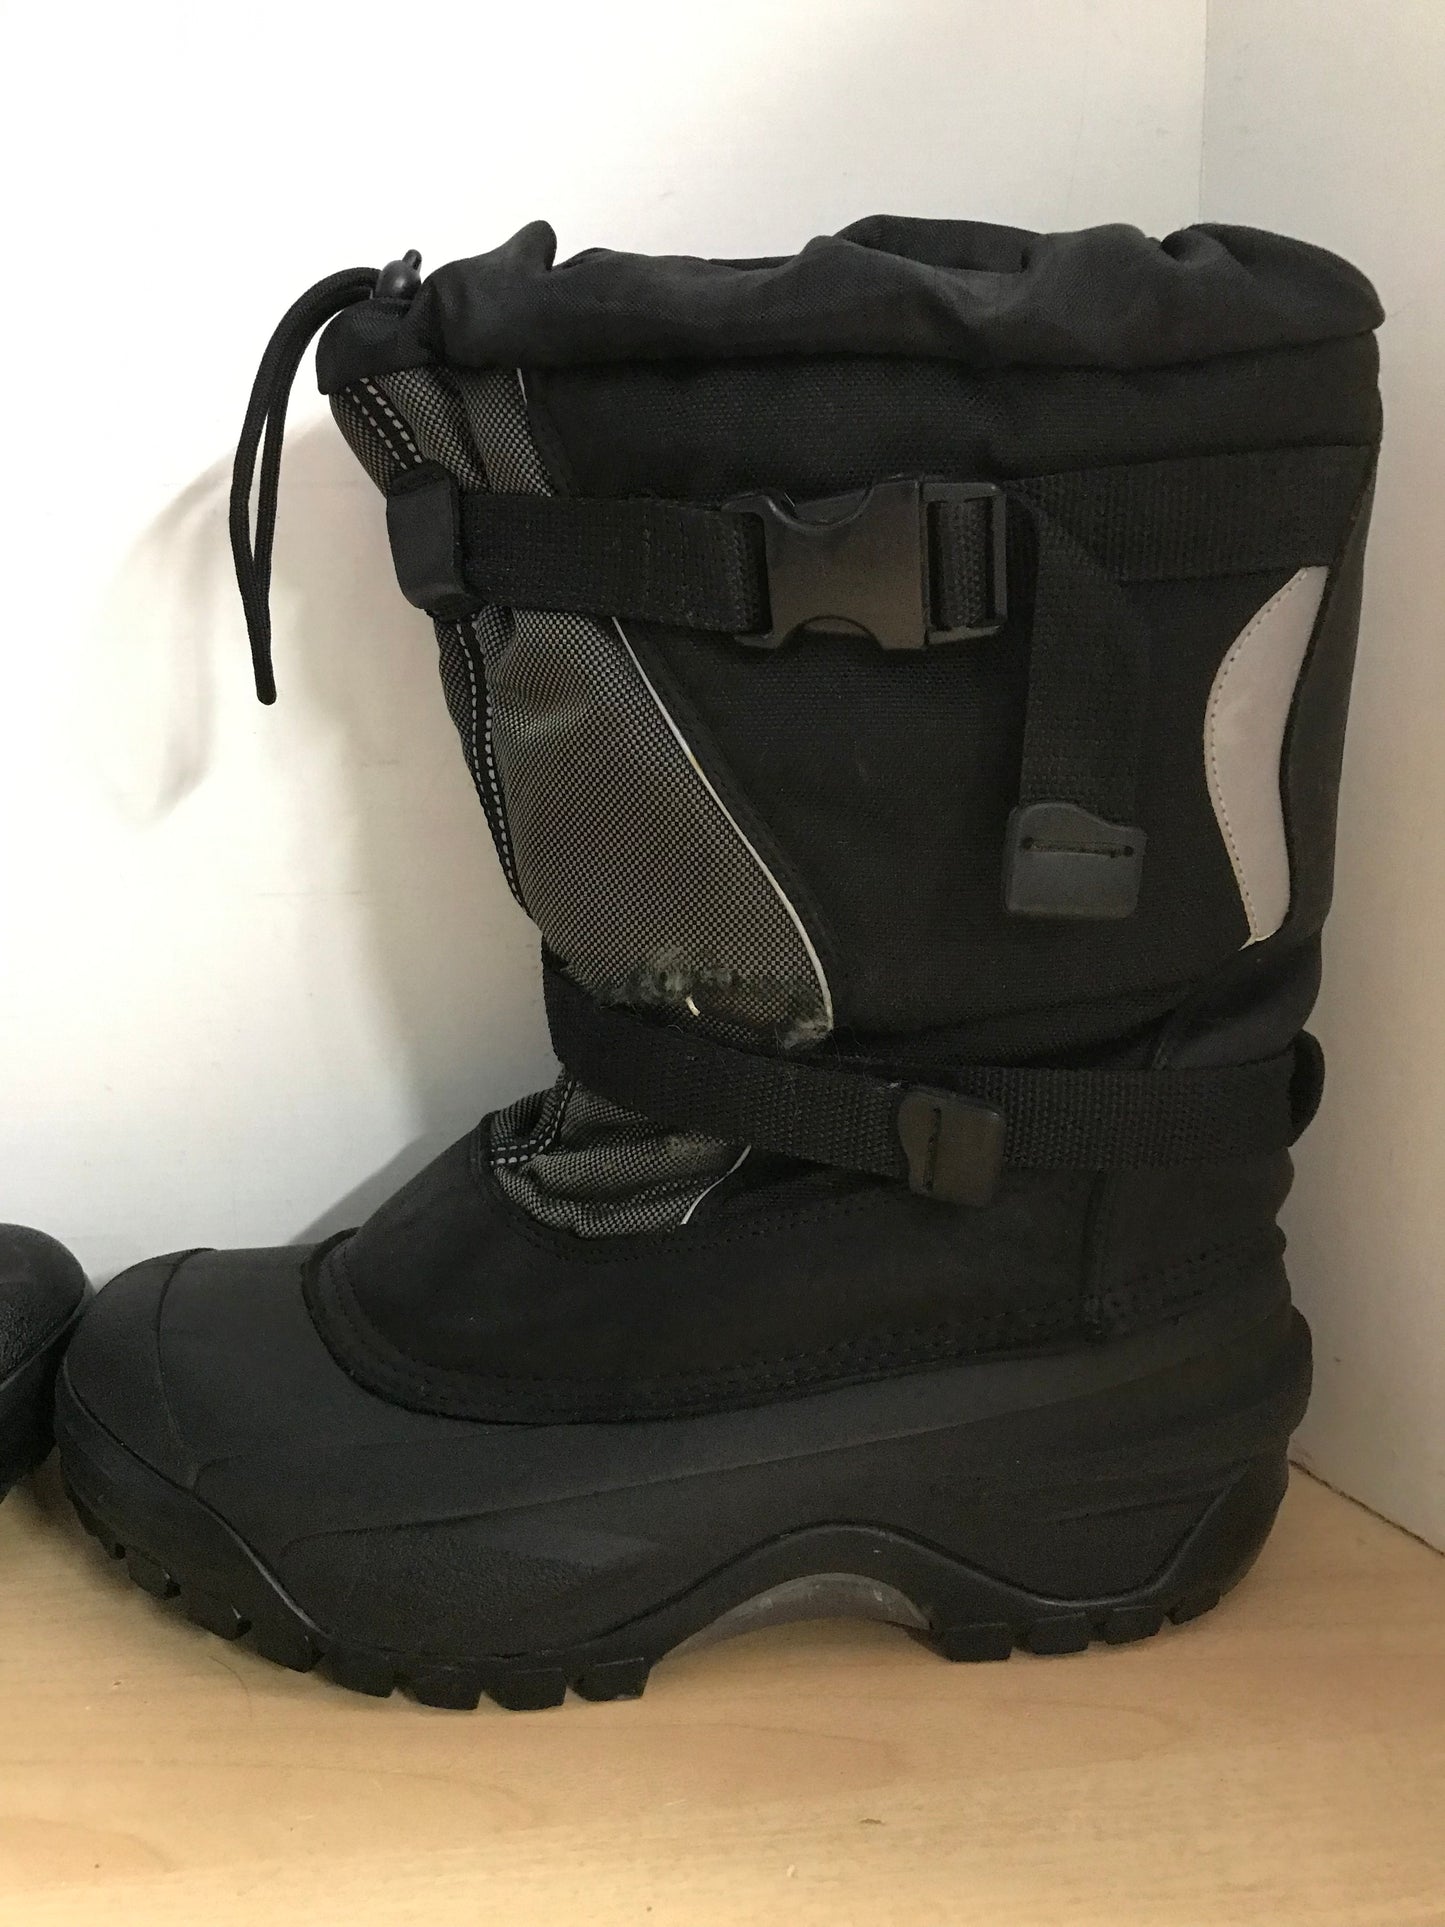 Winter Boots Men's Size 11 Baffin With Liner Black Minor Wear Around Strap